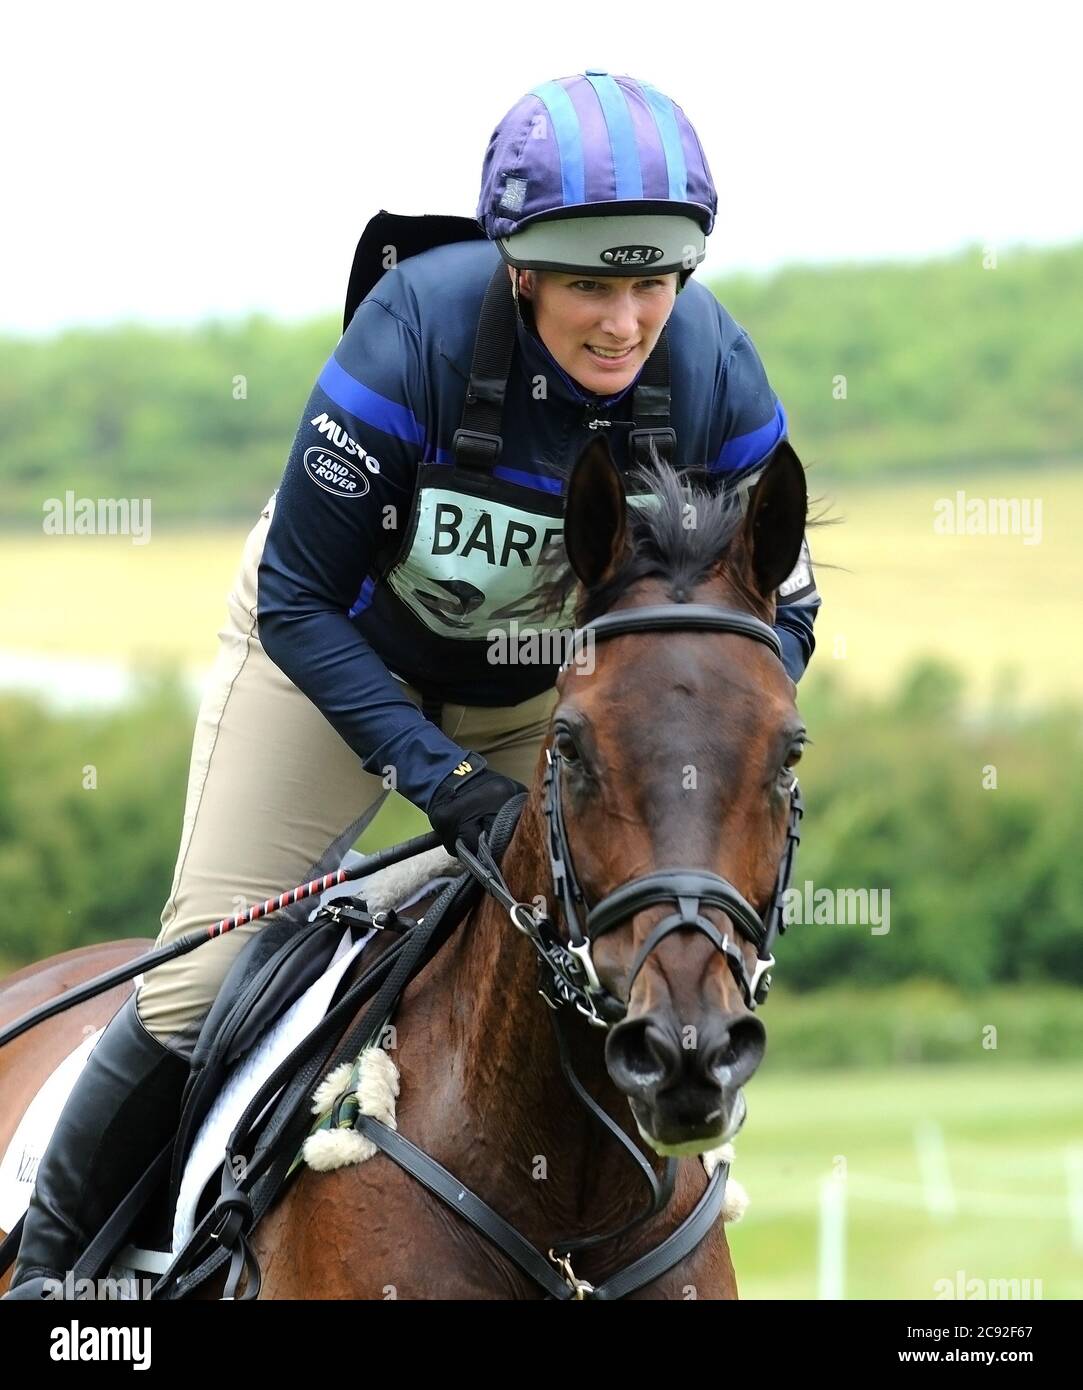 Zara Tindall MBE Olympian equestre in gara al campione del mondo di Eventing Eventing 2006 figlia di Anna, Principessa reale e Capt. Mark Phillips Foto Stock